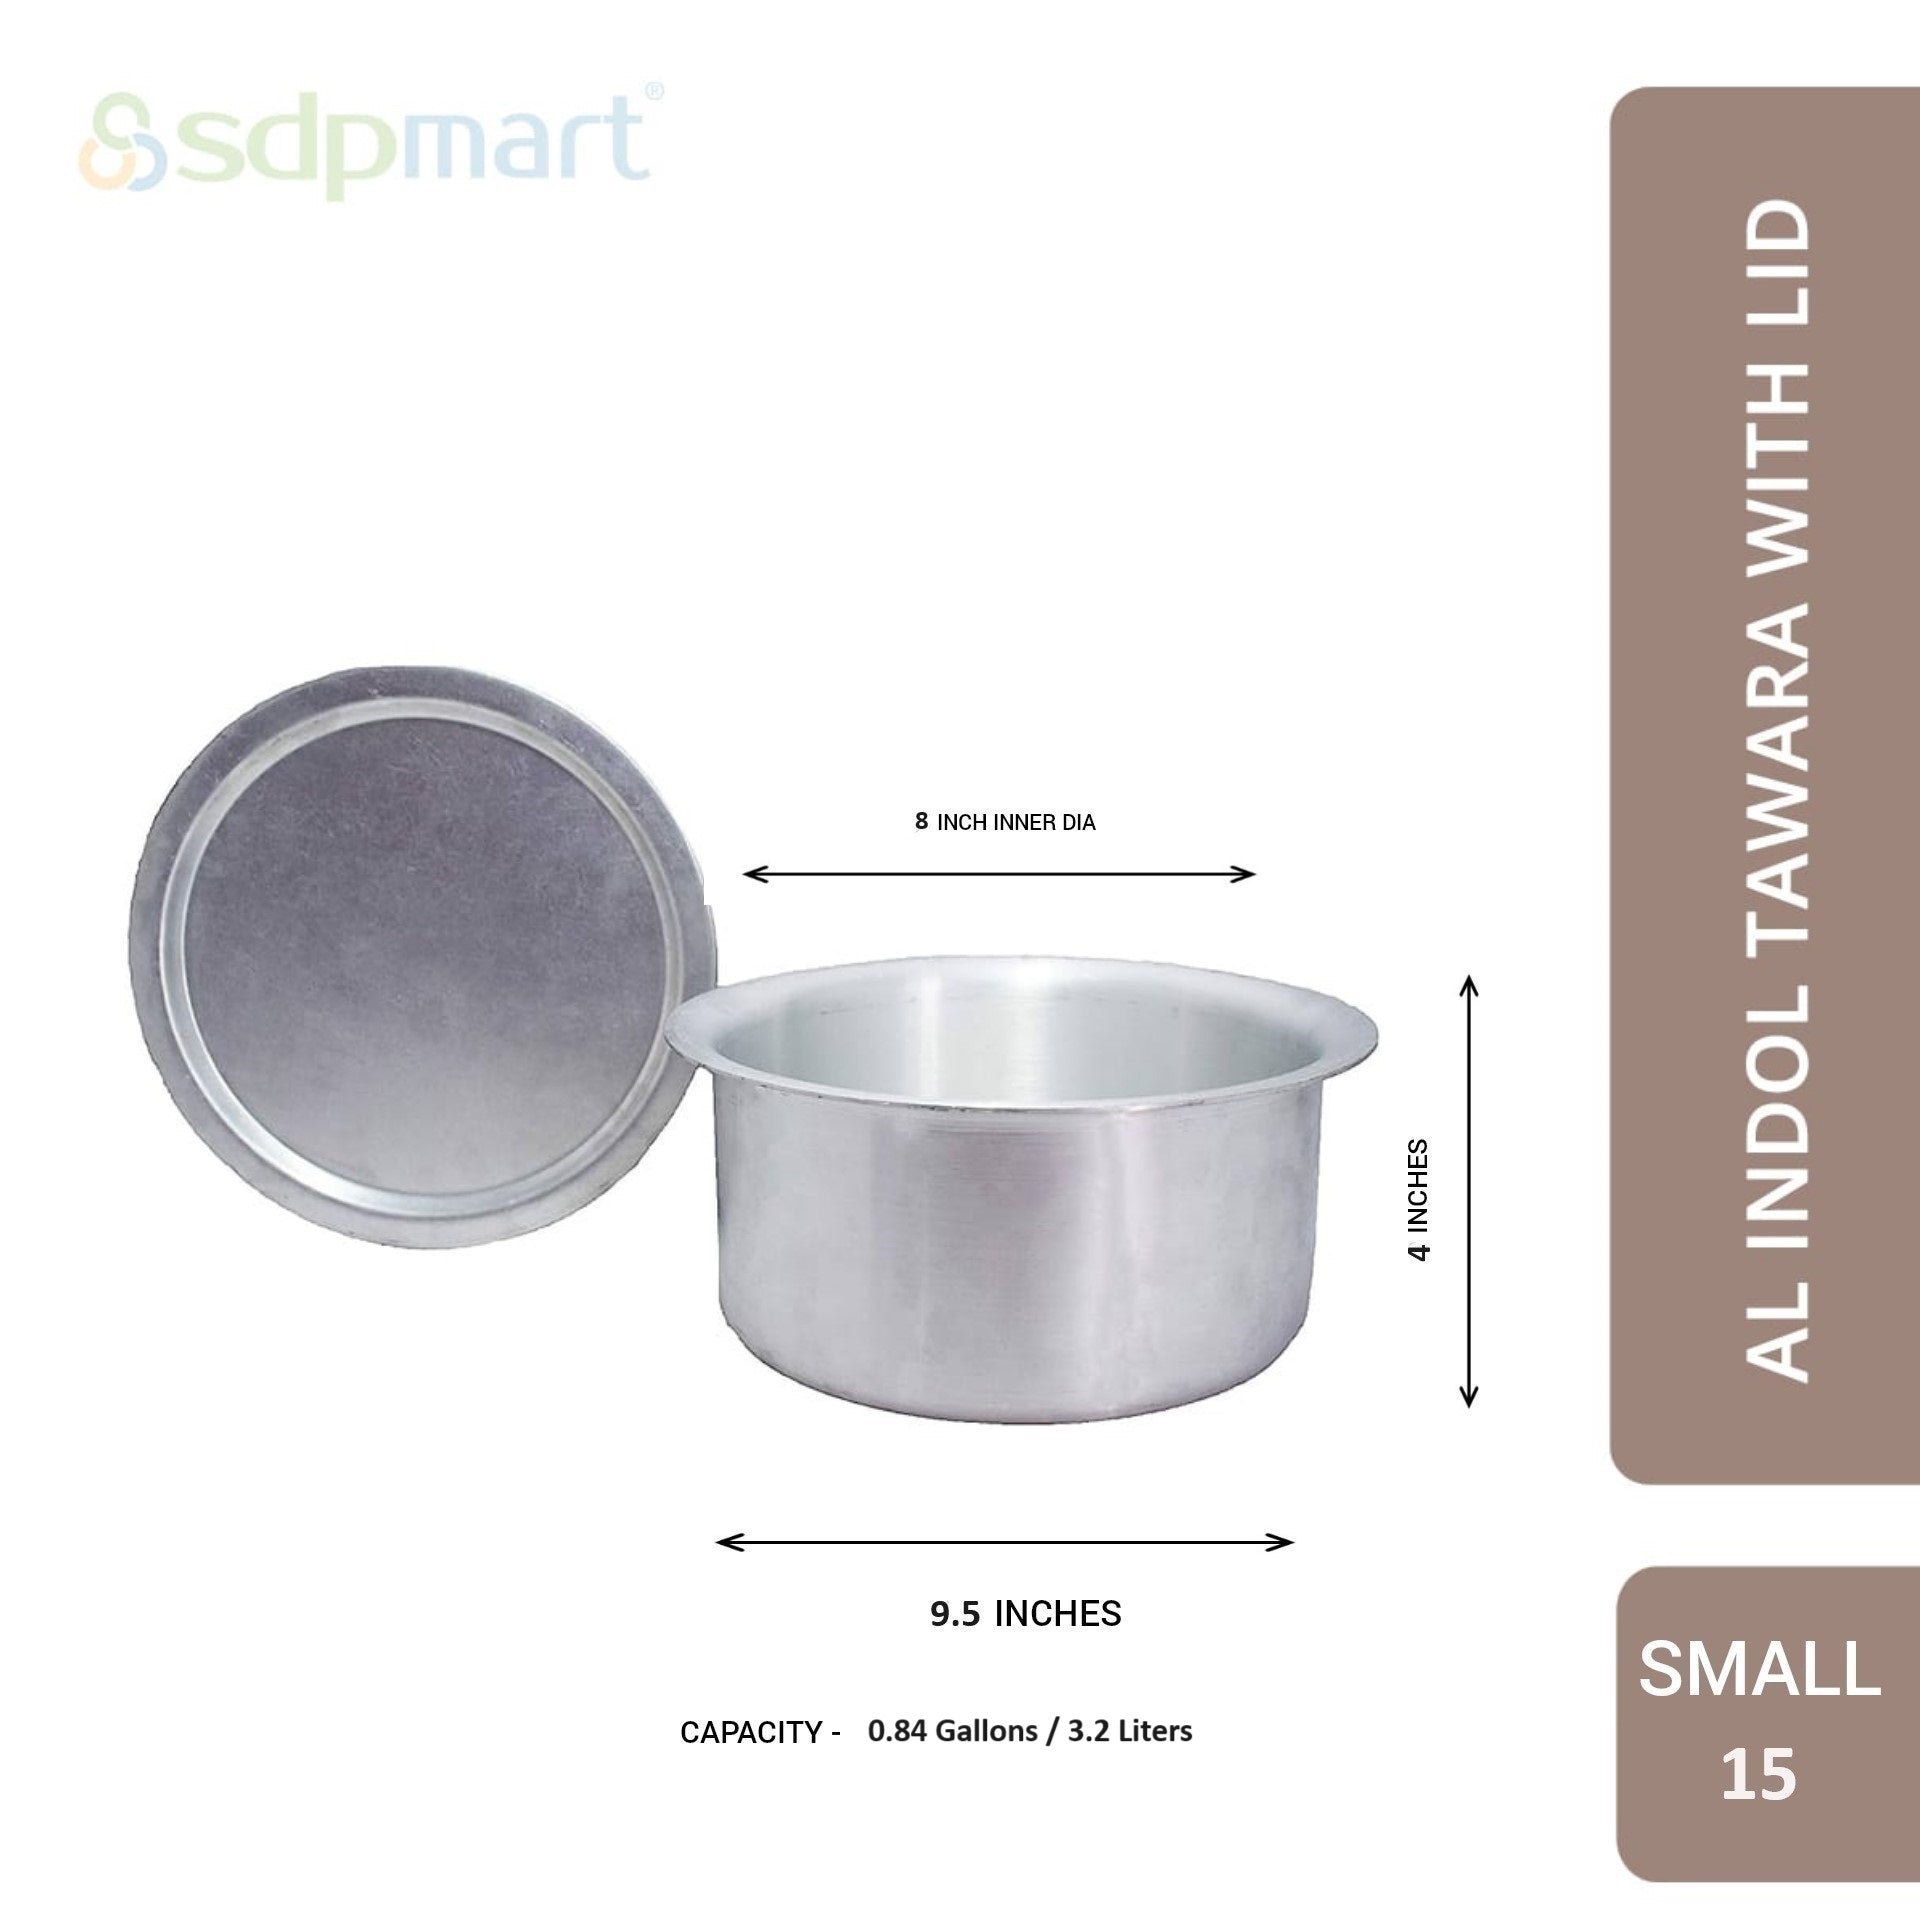 SDPMart Aluminum Indol Tawara Small W/Lid